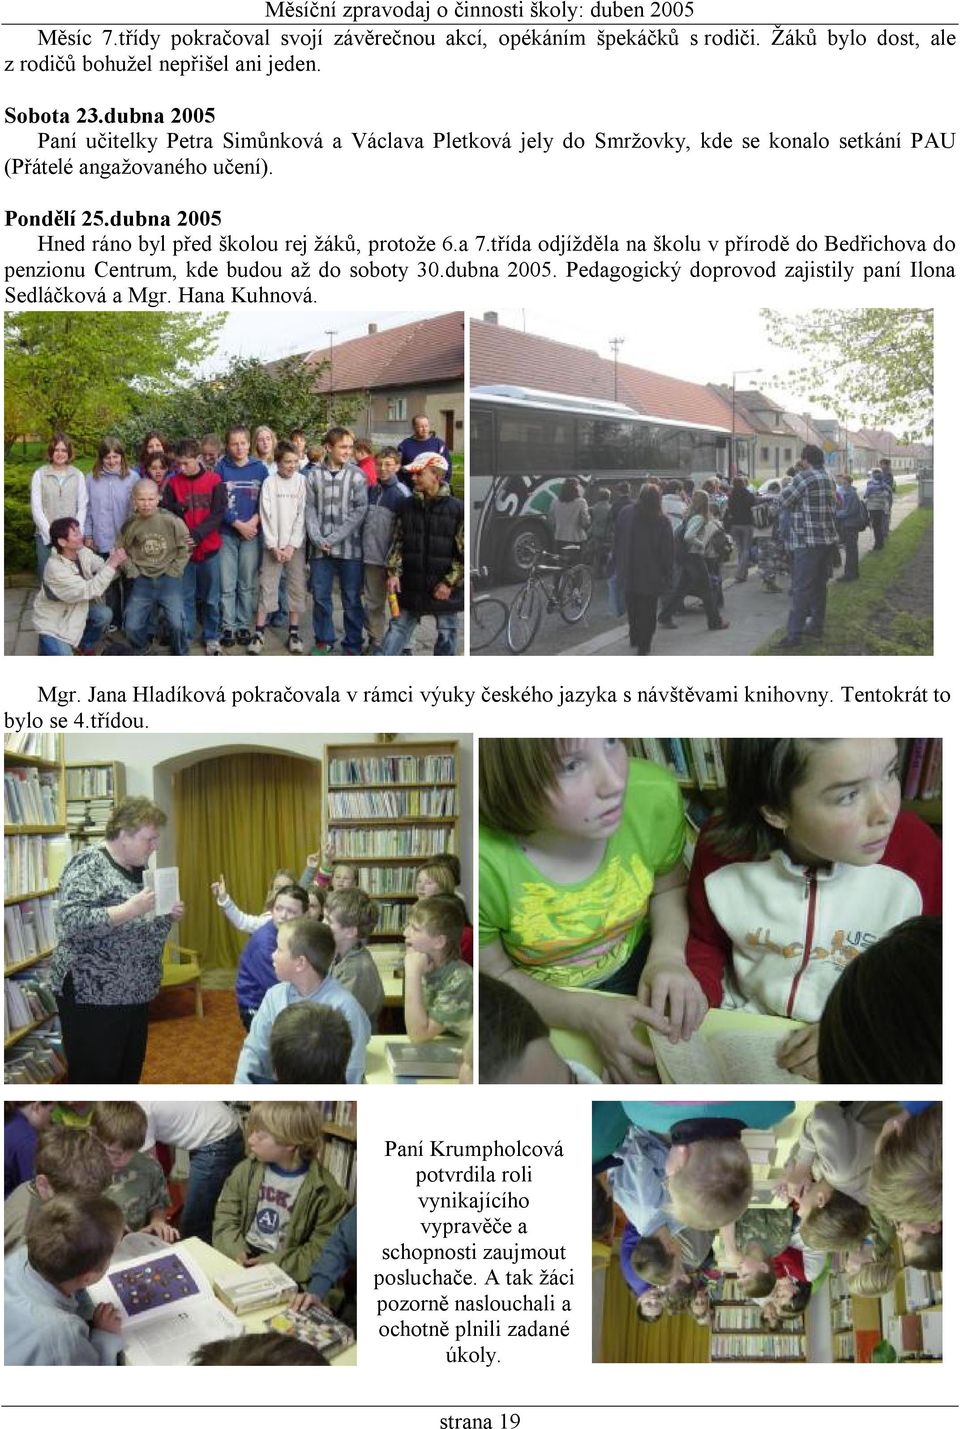 dubna 2005 Hned ráno byl před školou rej žáků, protože 6.a 7.třída odjížděla na školu v přírodě do Bedřichova do penzionu Centrum, kde budou až do soboty 30.dubna 2005. Pedagogický doprovod zajistily paní Ilona Sedláčková a Mgr.